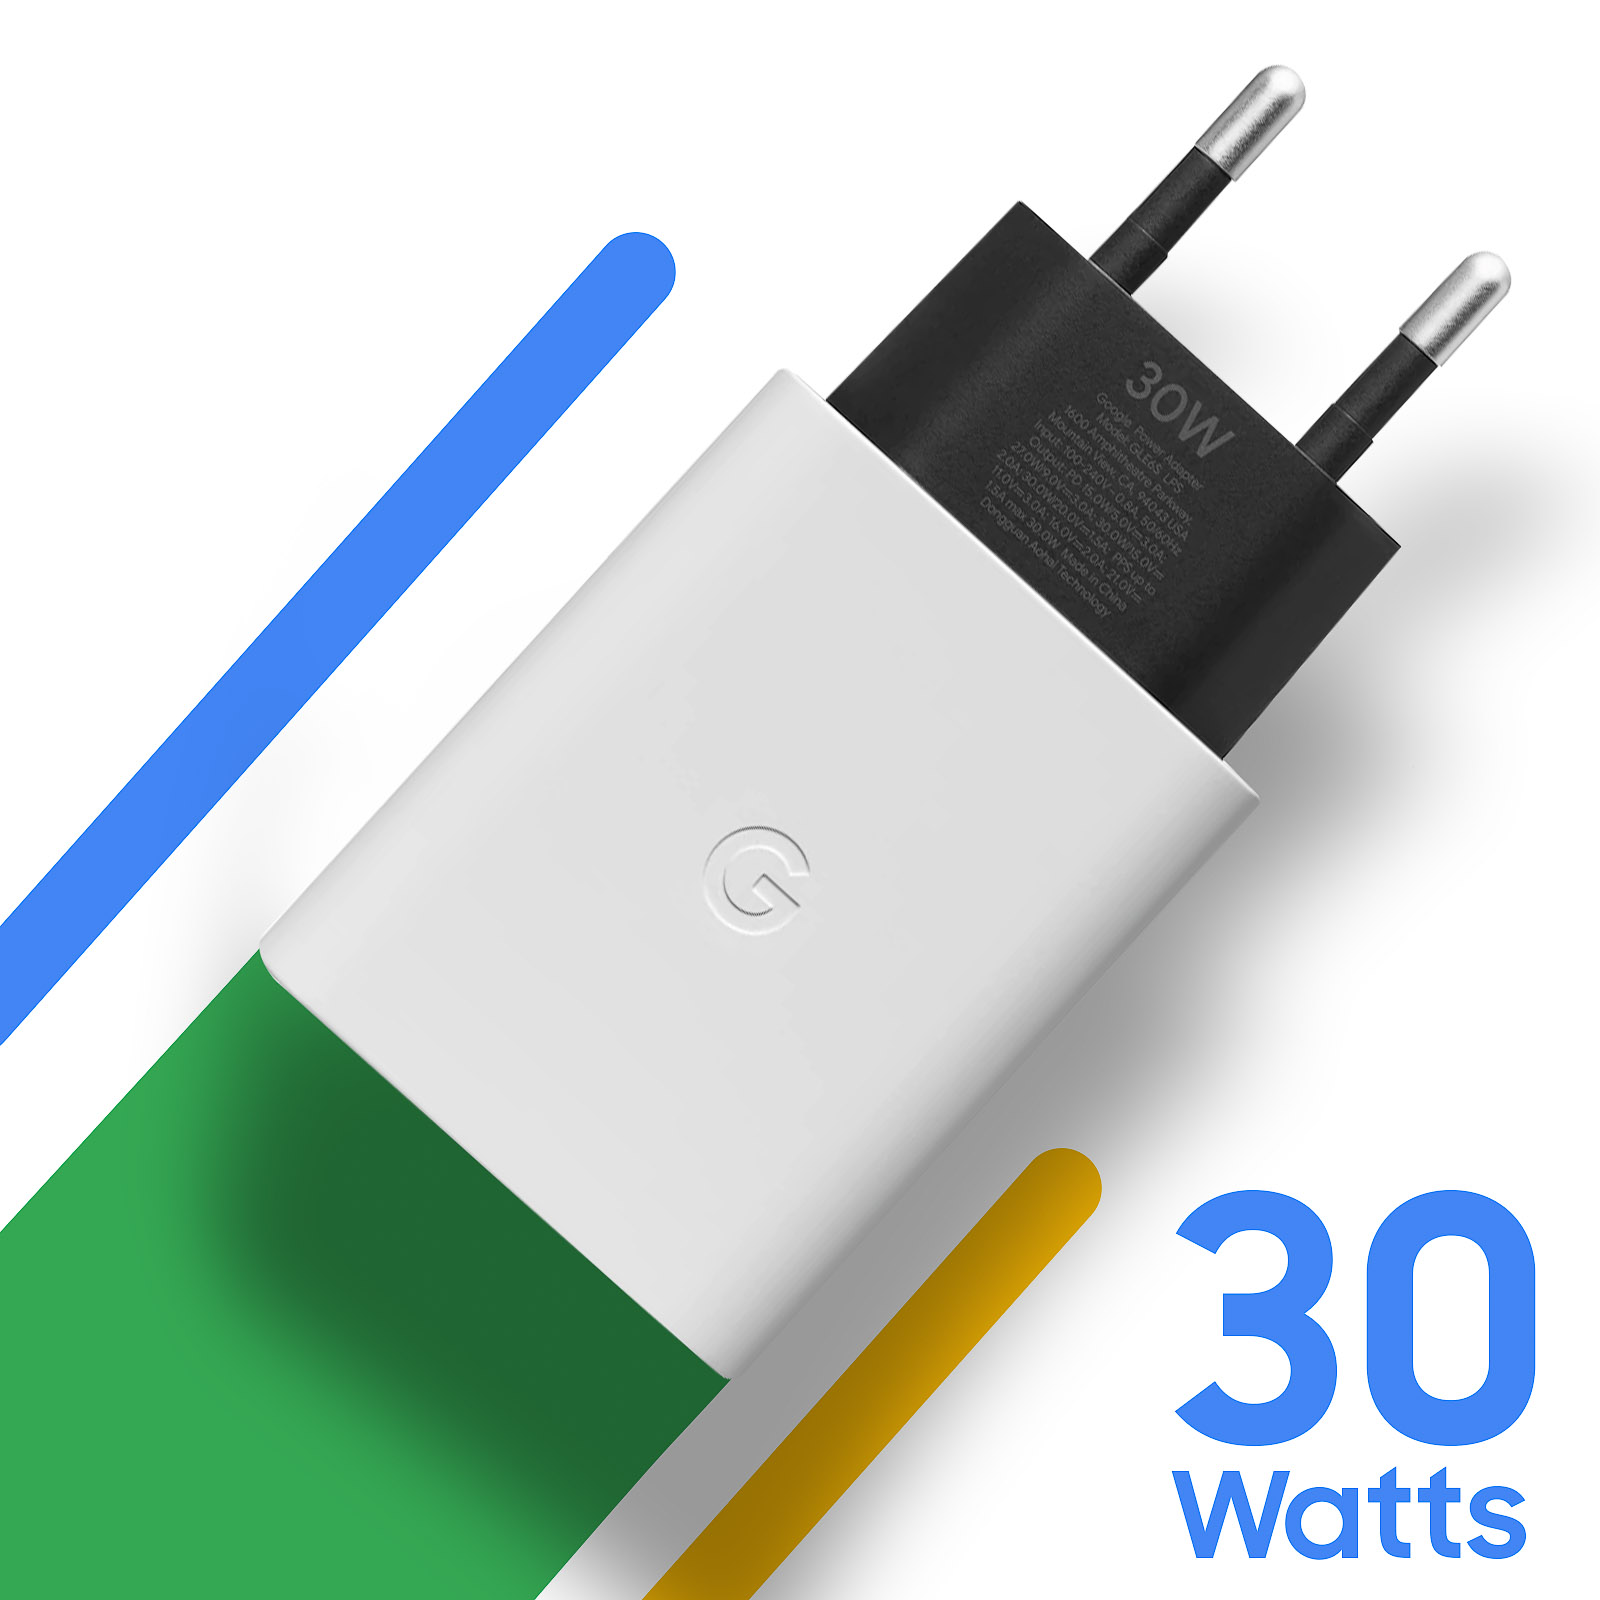 Chargeur Google 30W d'Origine, USB-C Power Delivery - Français